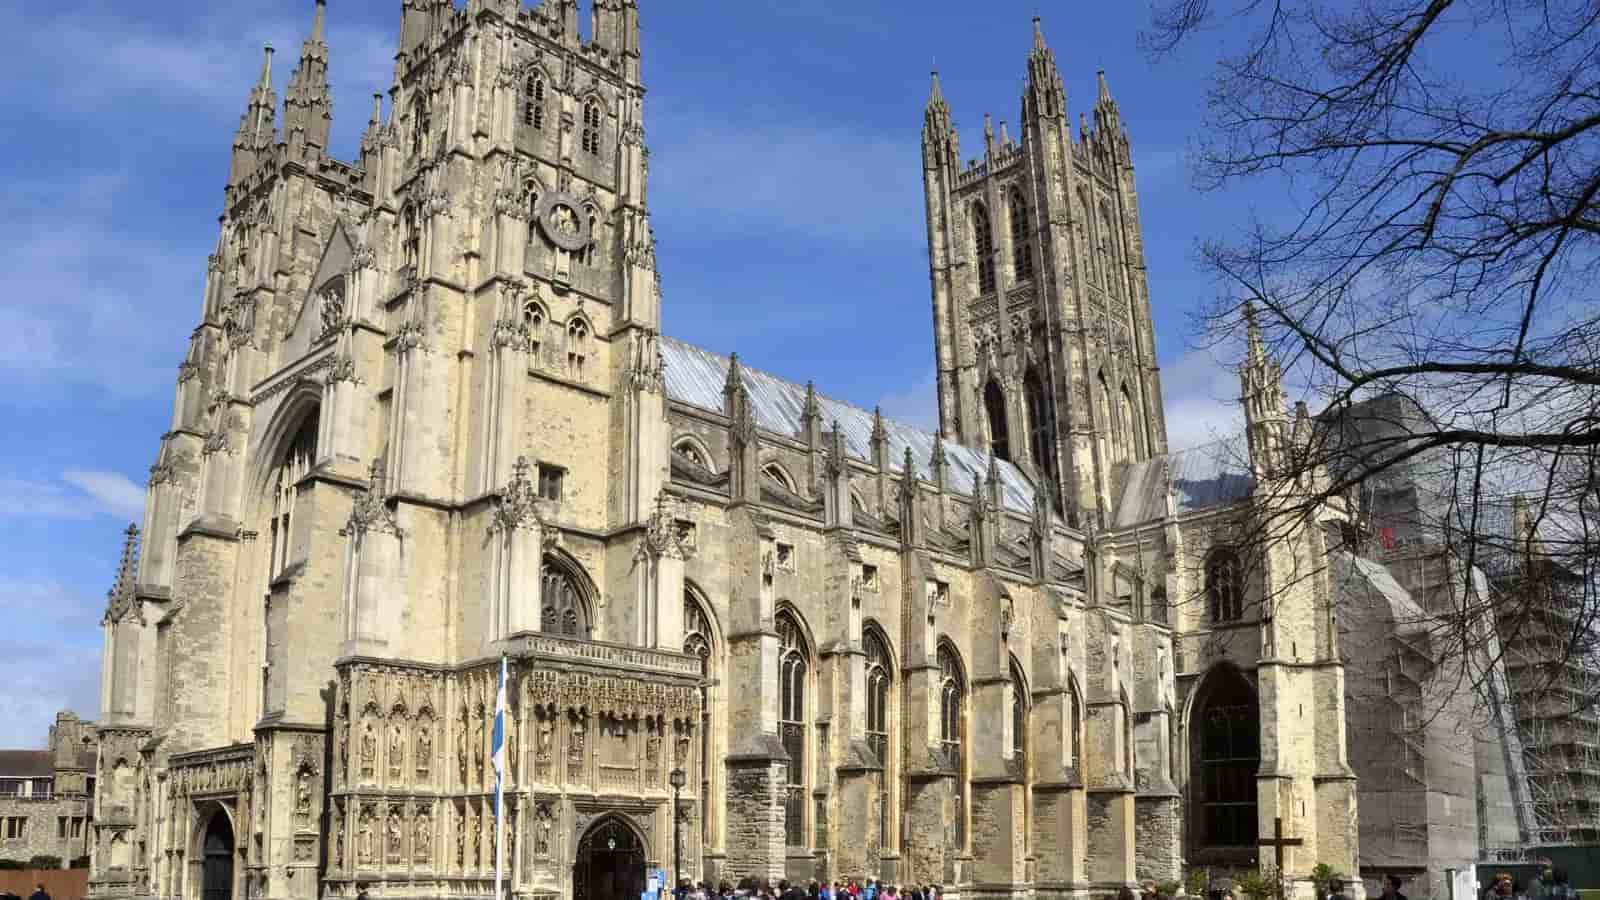 Canterbury Anniversary Day